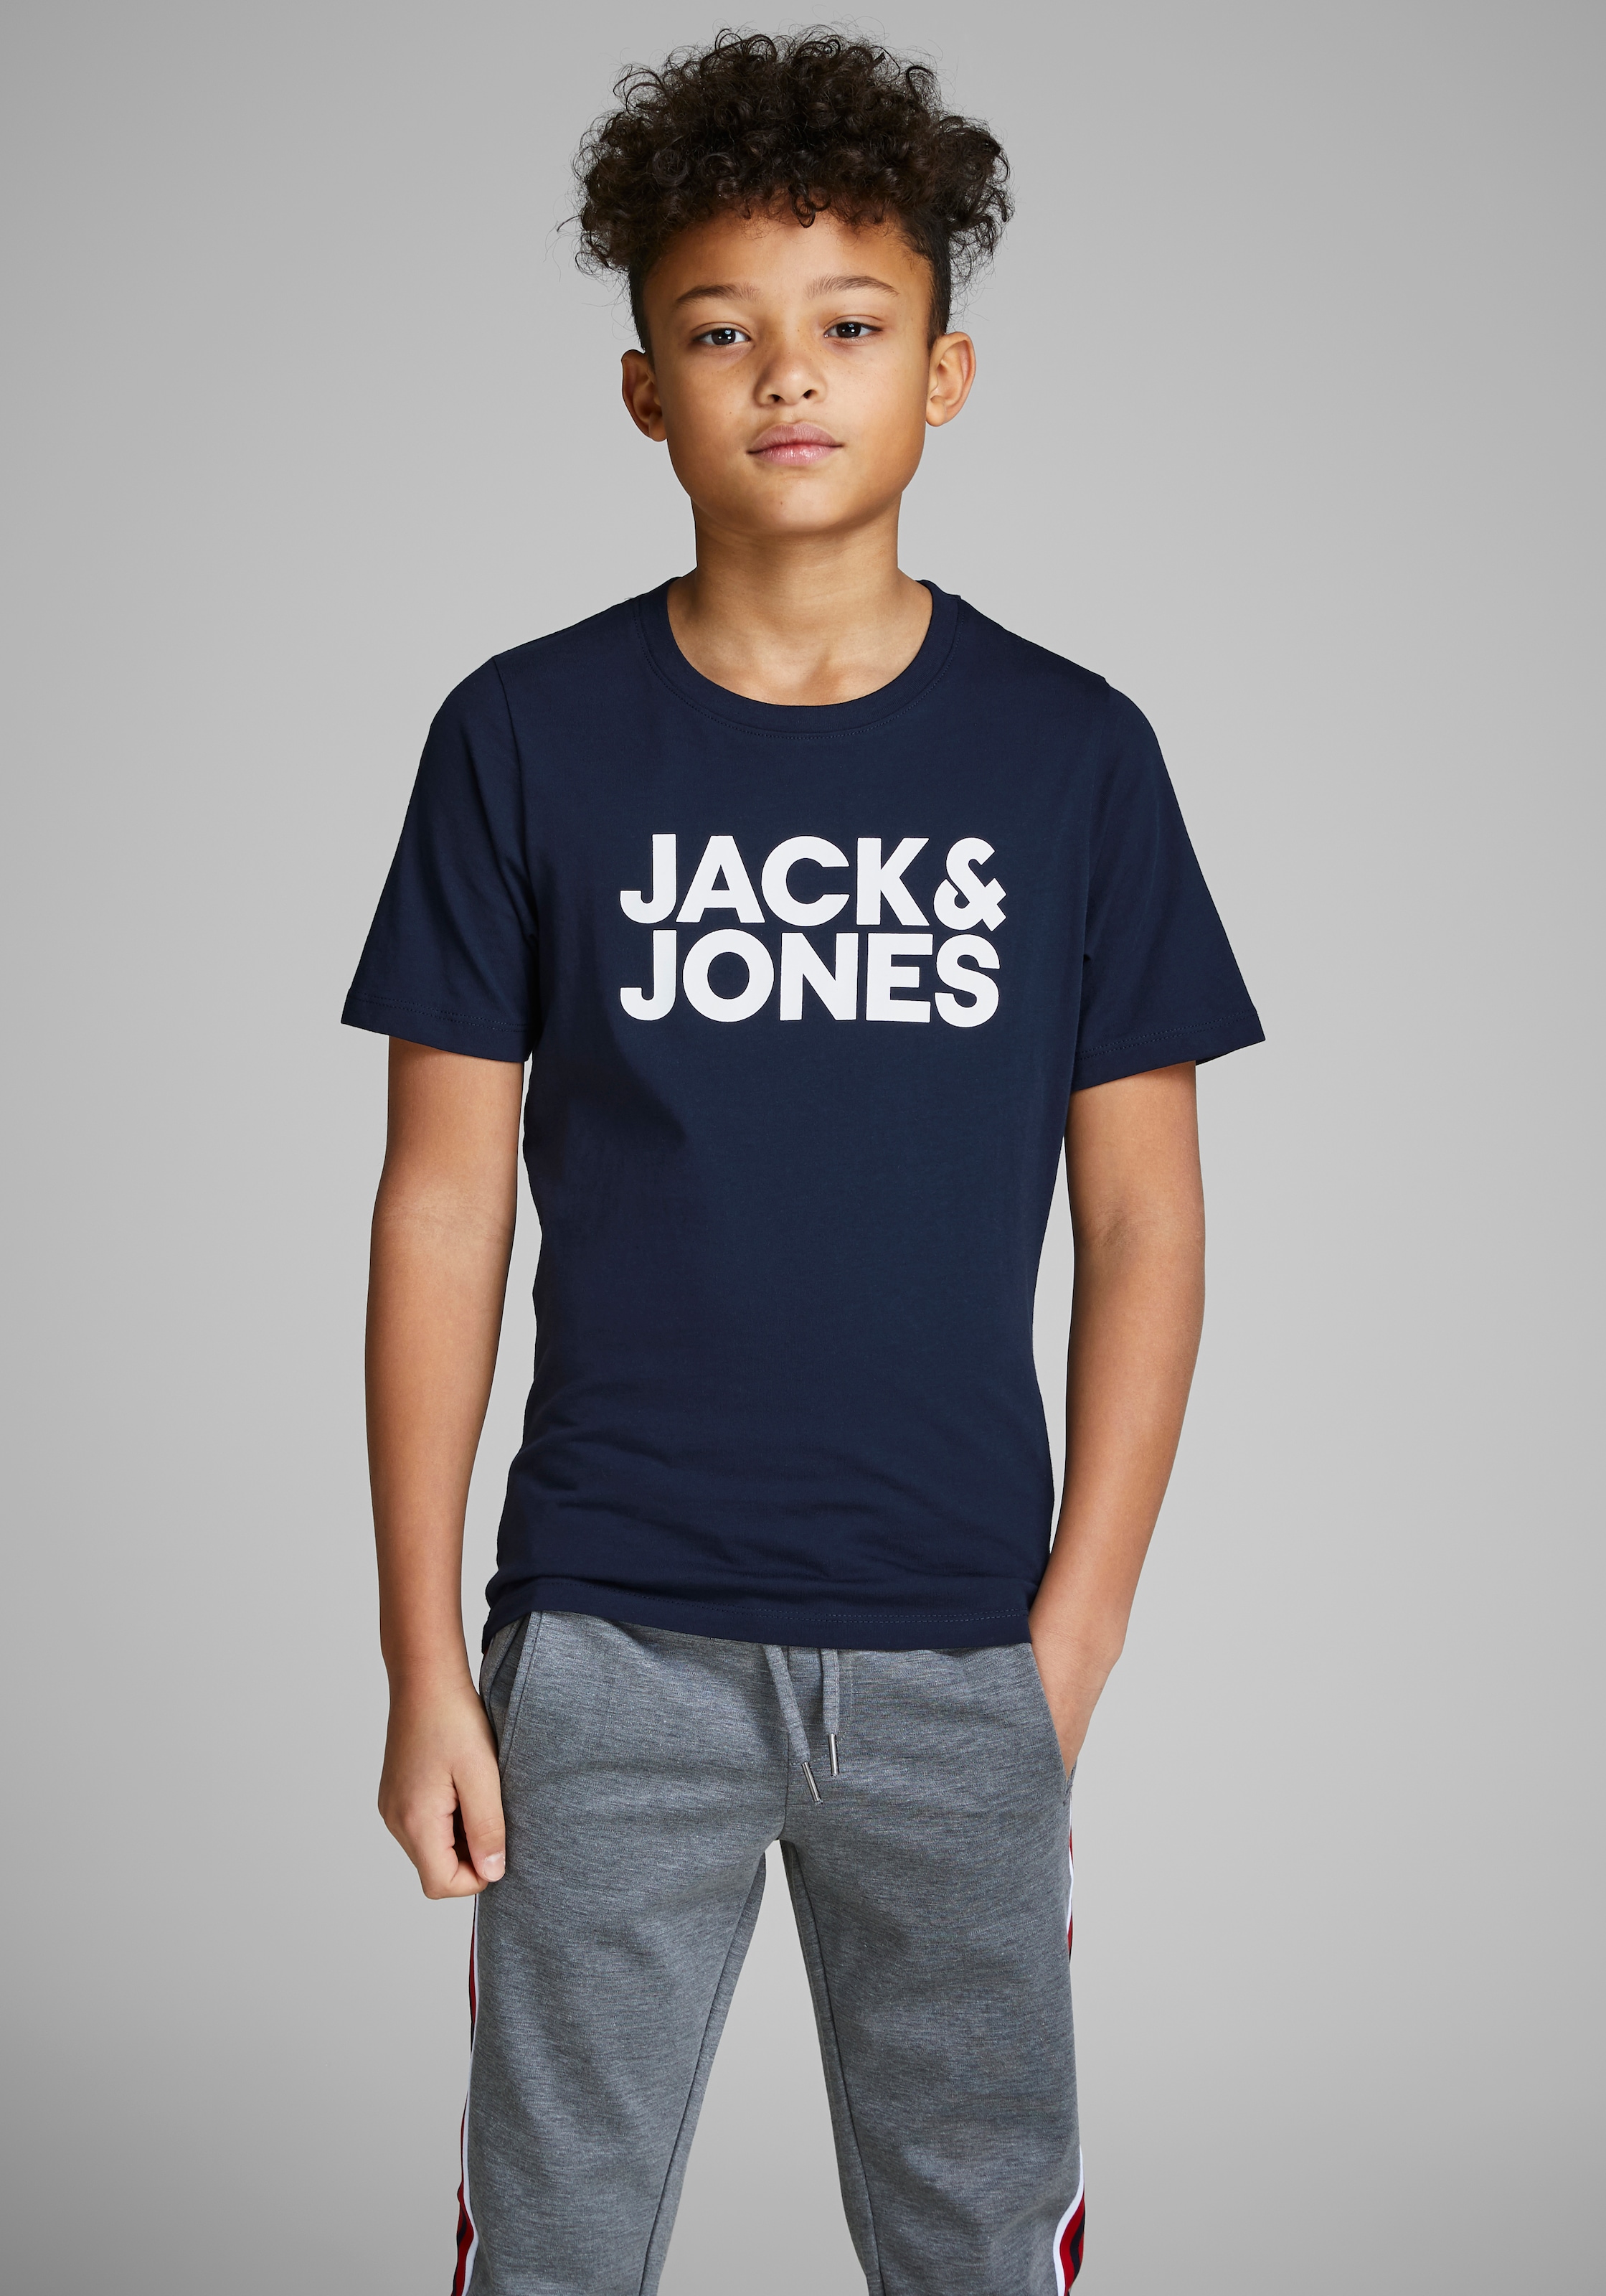 Jack & Jones Junior T-Shirt kaufen bei OTTO